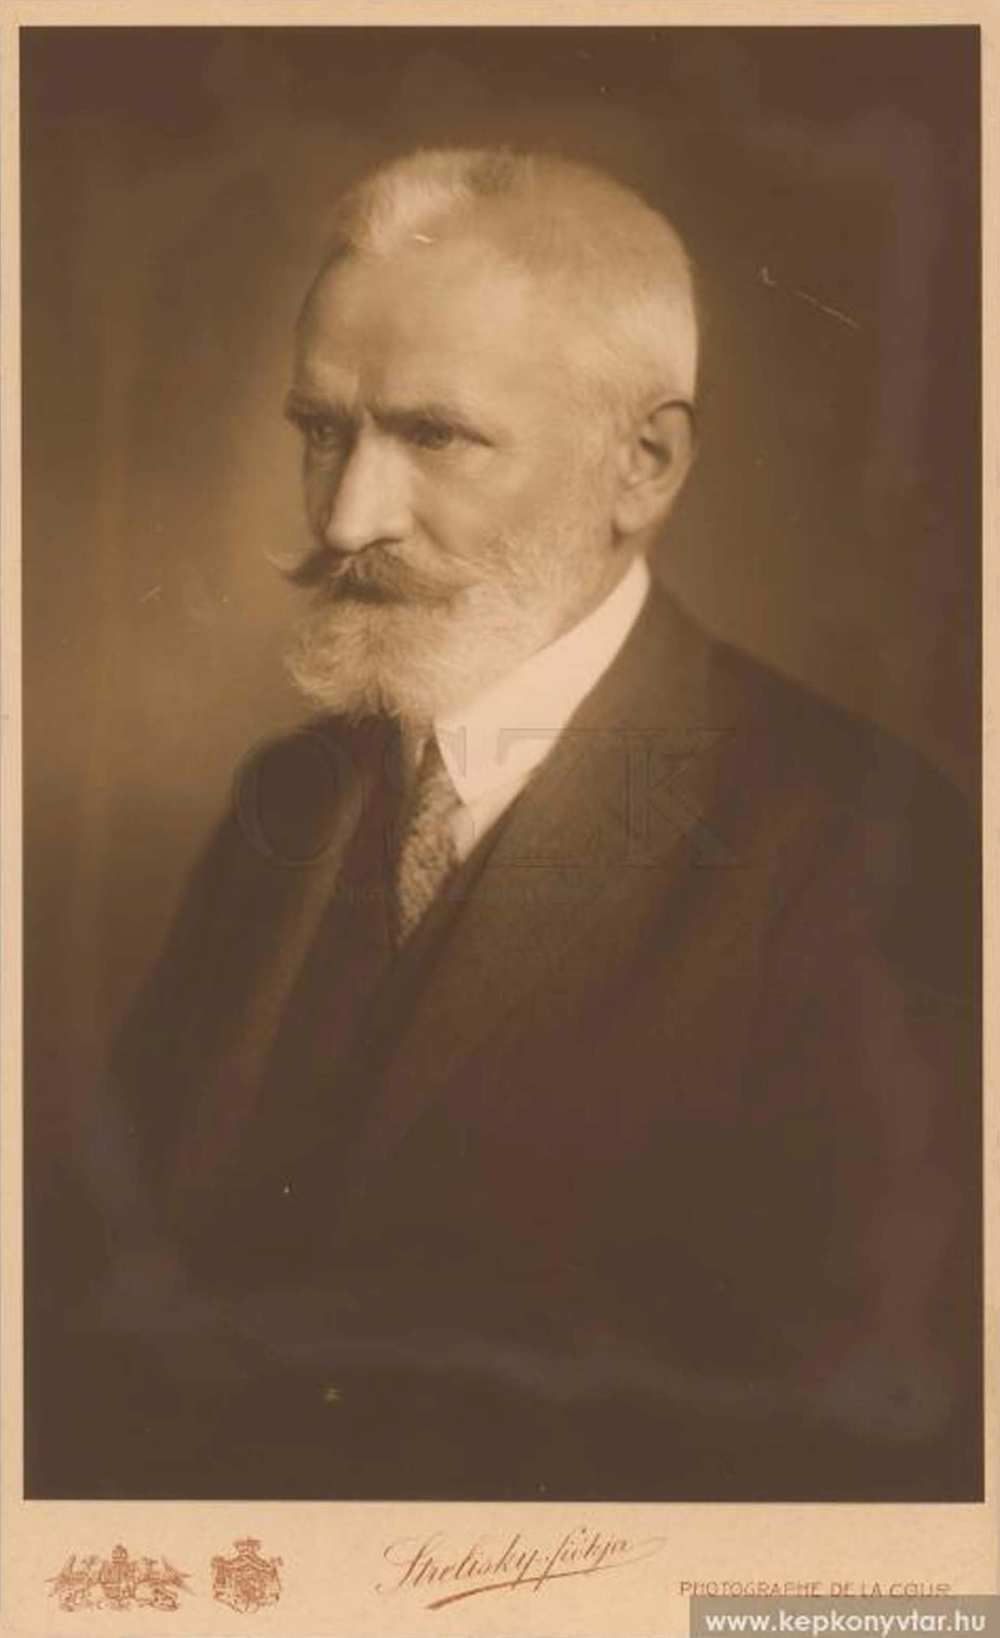 Cholnoky Jenő arcképe. Fotó: Strelisky Sándor, 1917. – Kézirattár, Arckép 427. http://nektar.oszk.hu/hu/manifestation/2826562